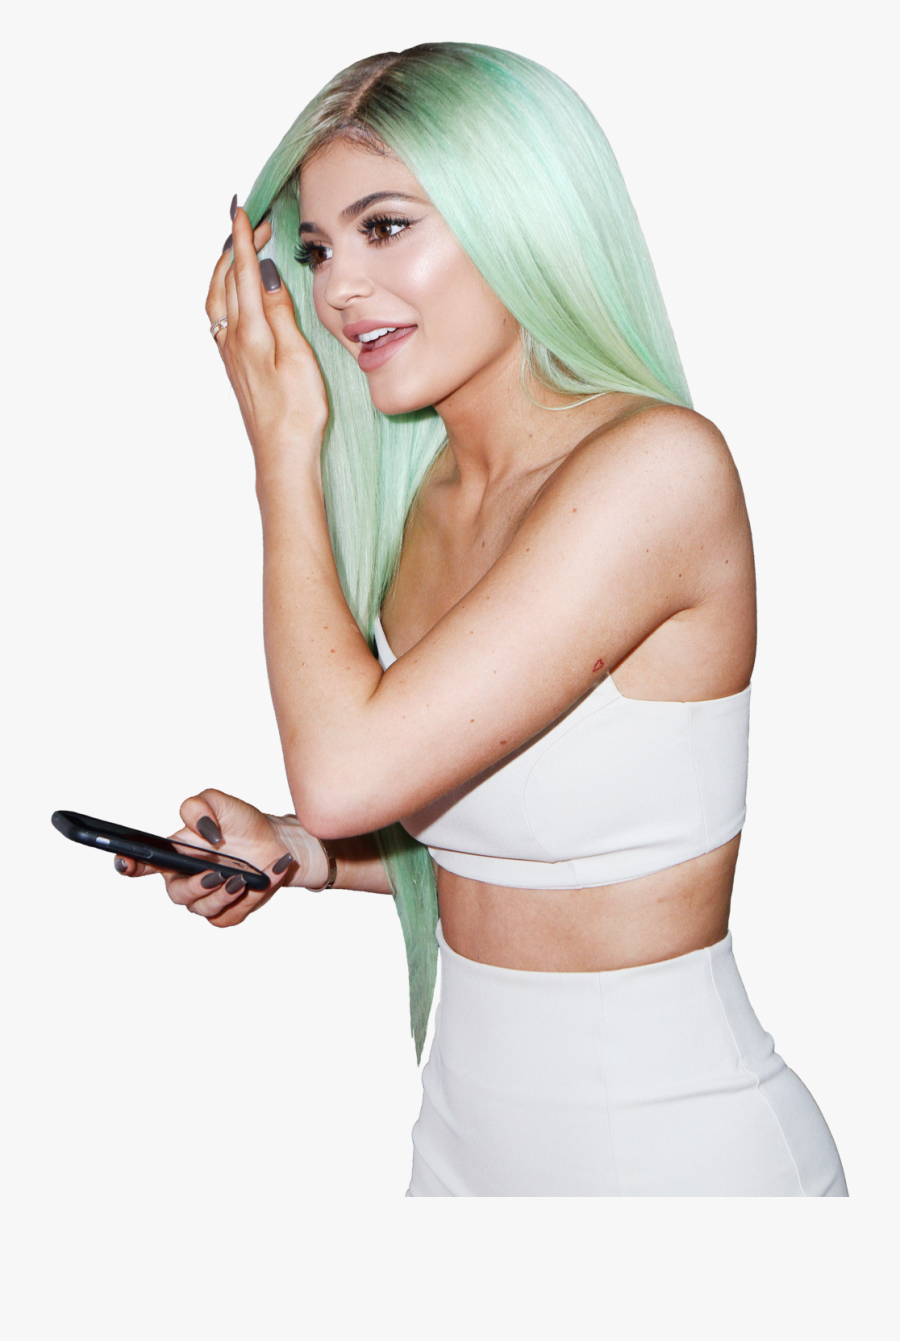 Kylie Jenner Png Image - Kylie Jenner Transparent Background, Transparent Clipart